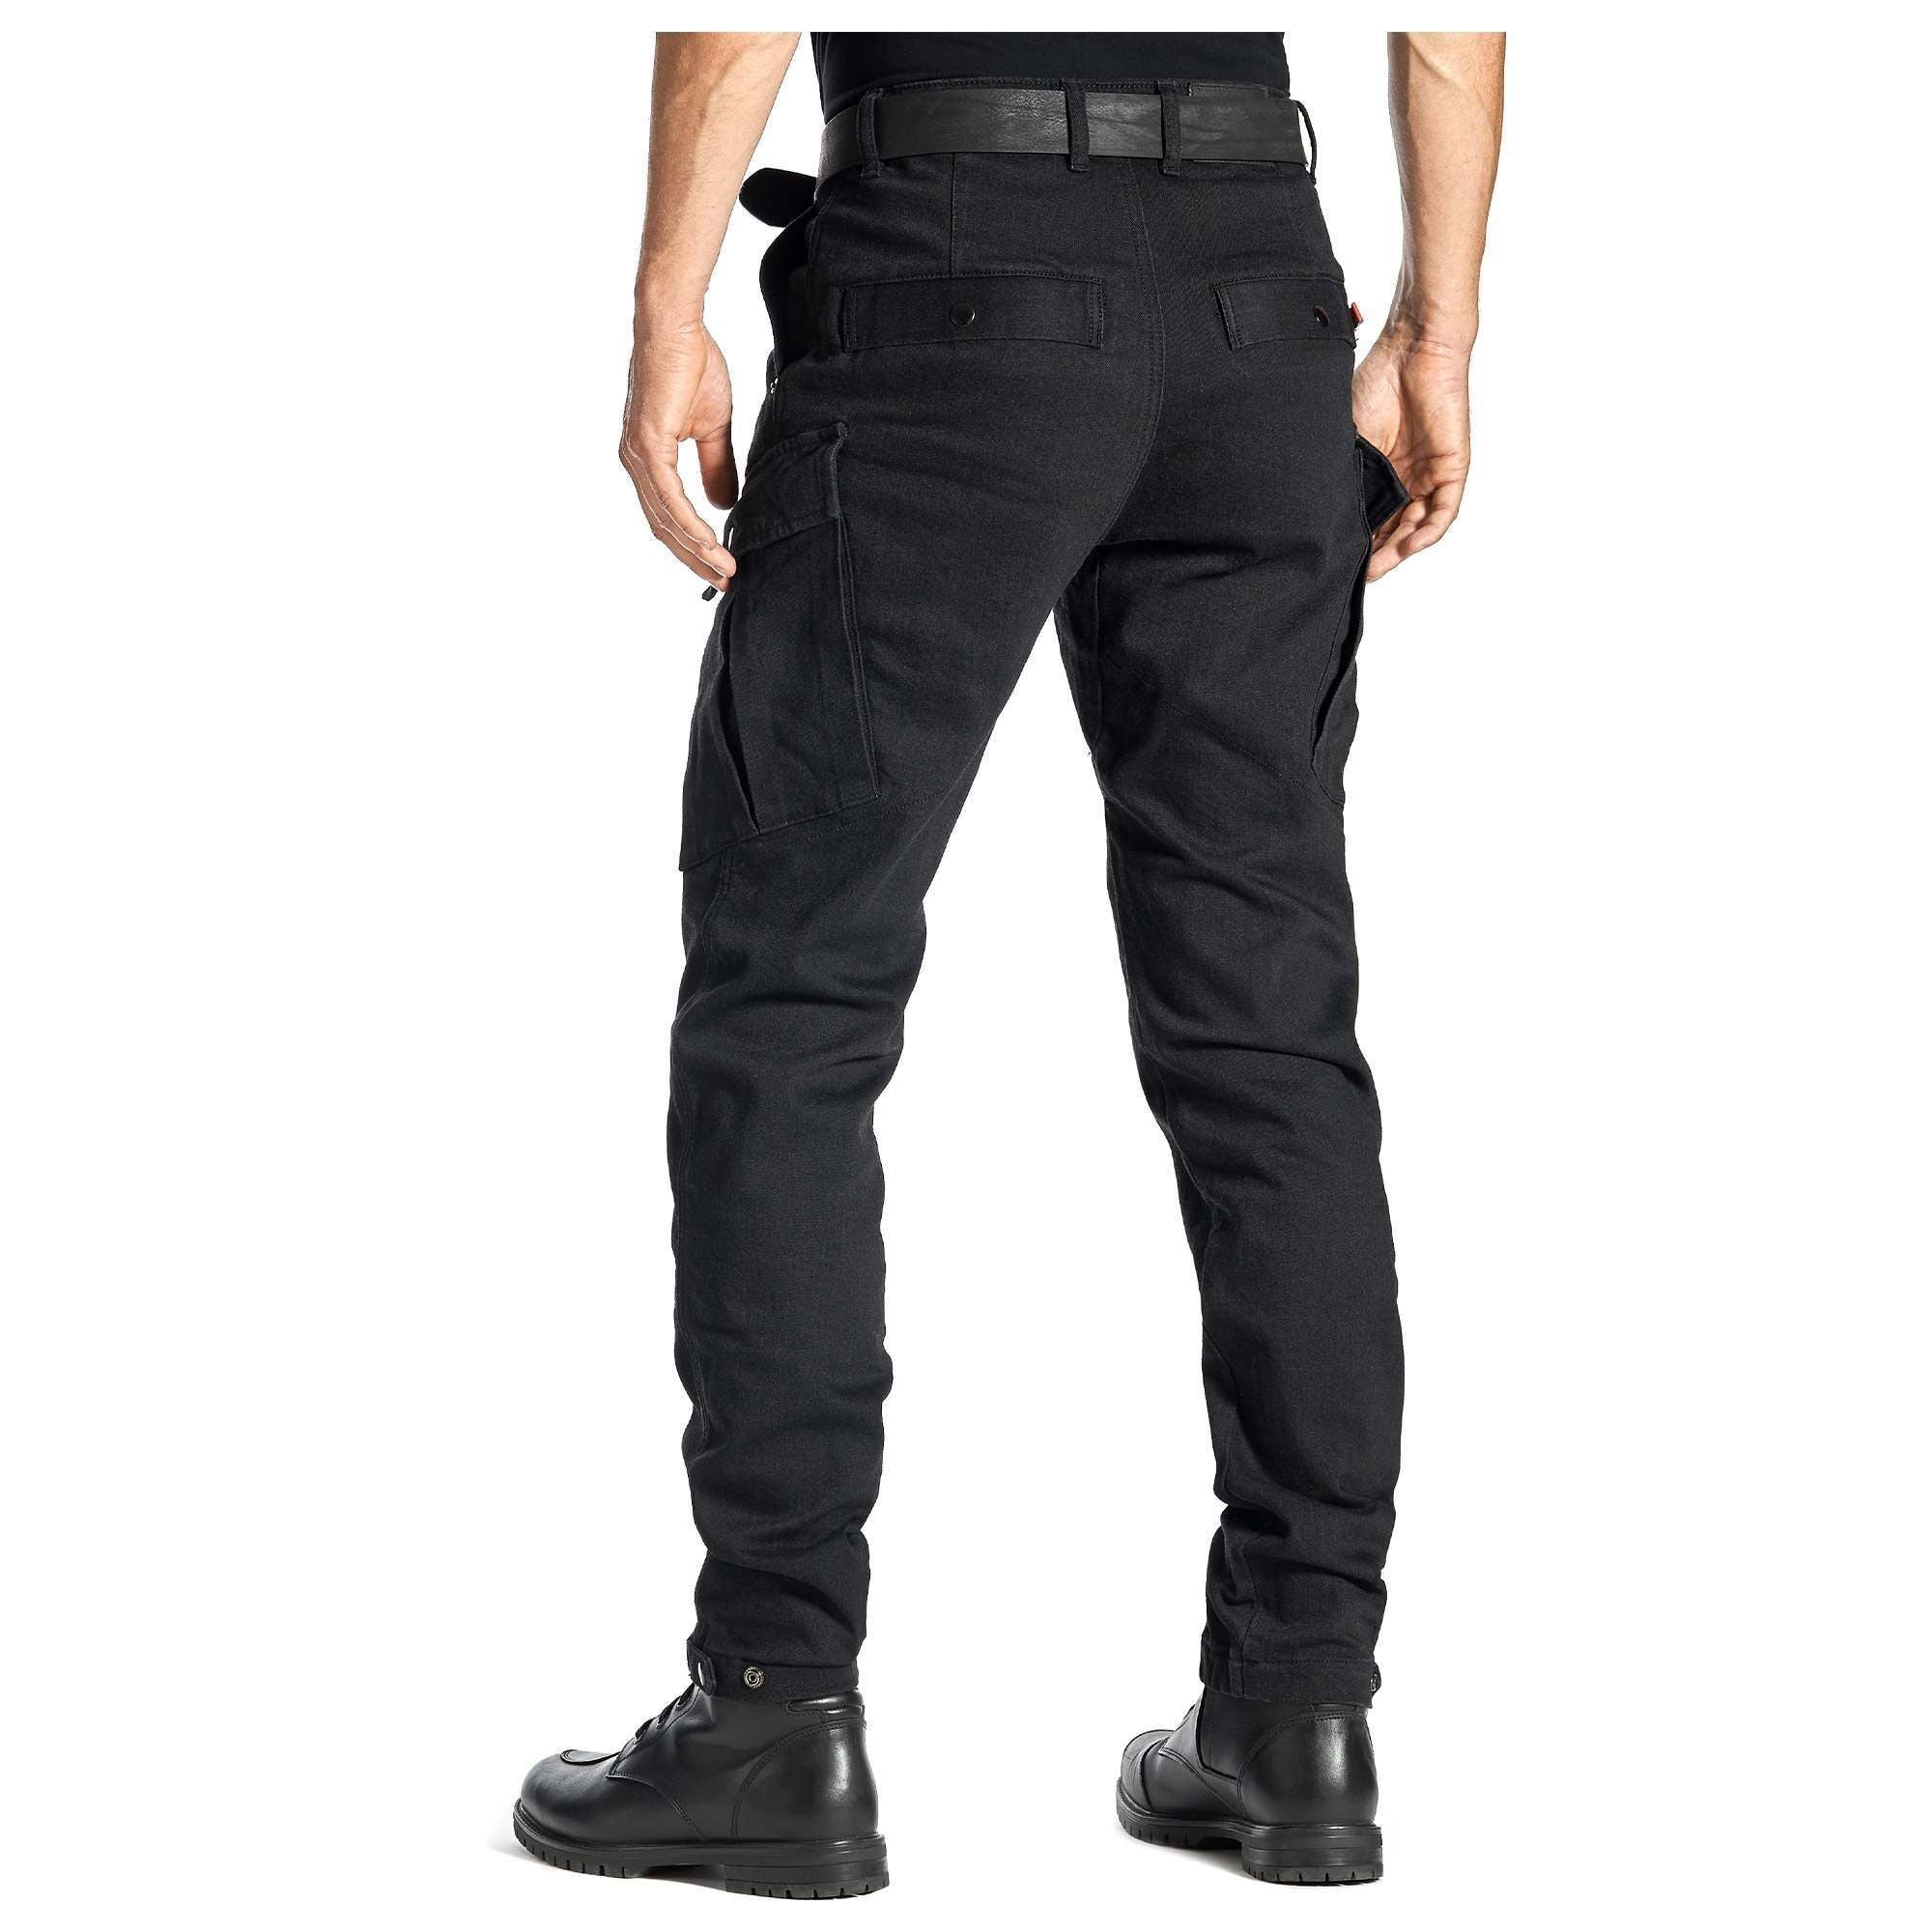 Pando Moto Mark Kev 01 Jeans, Length 30 - Black - Motofever